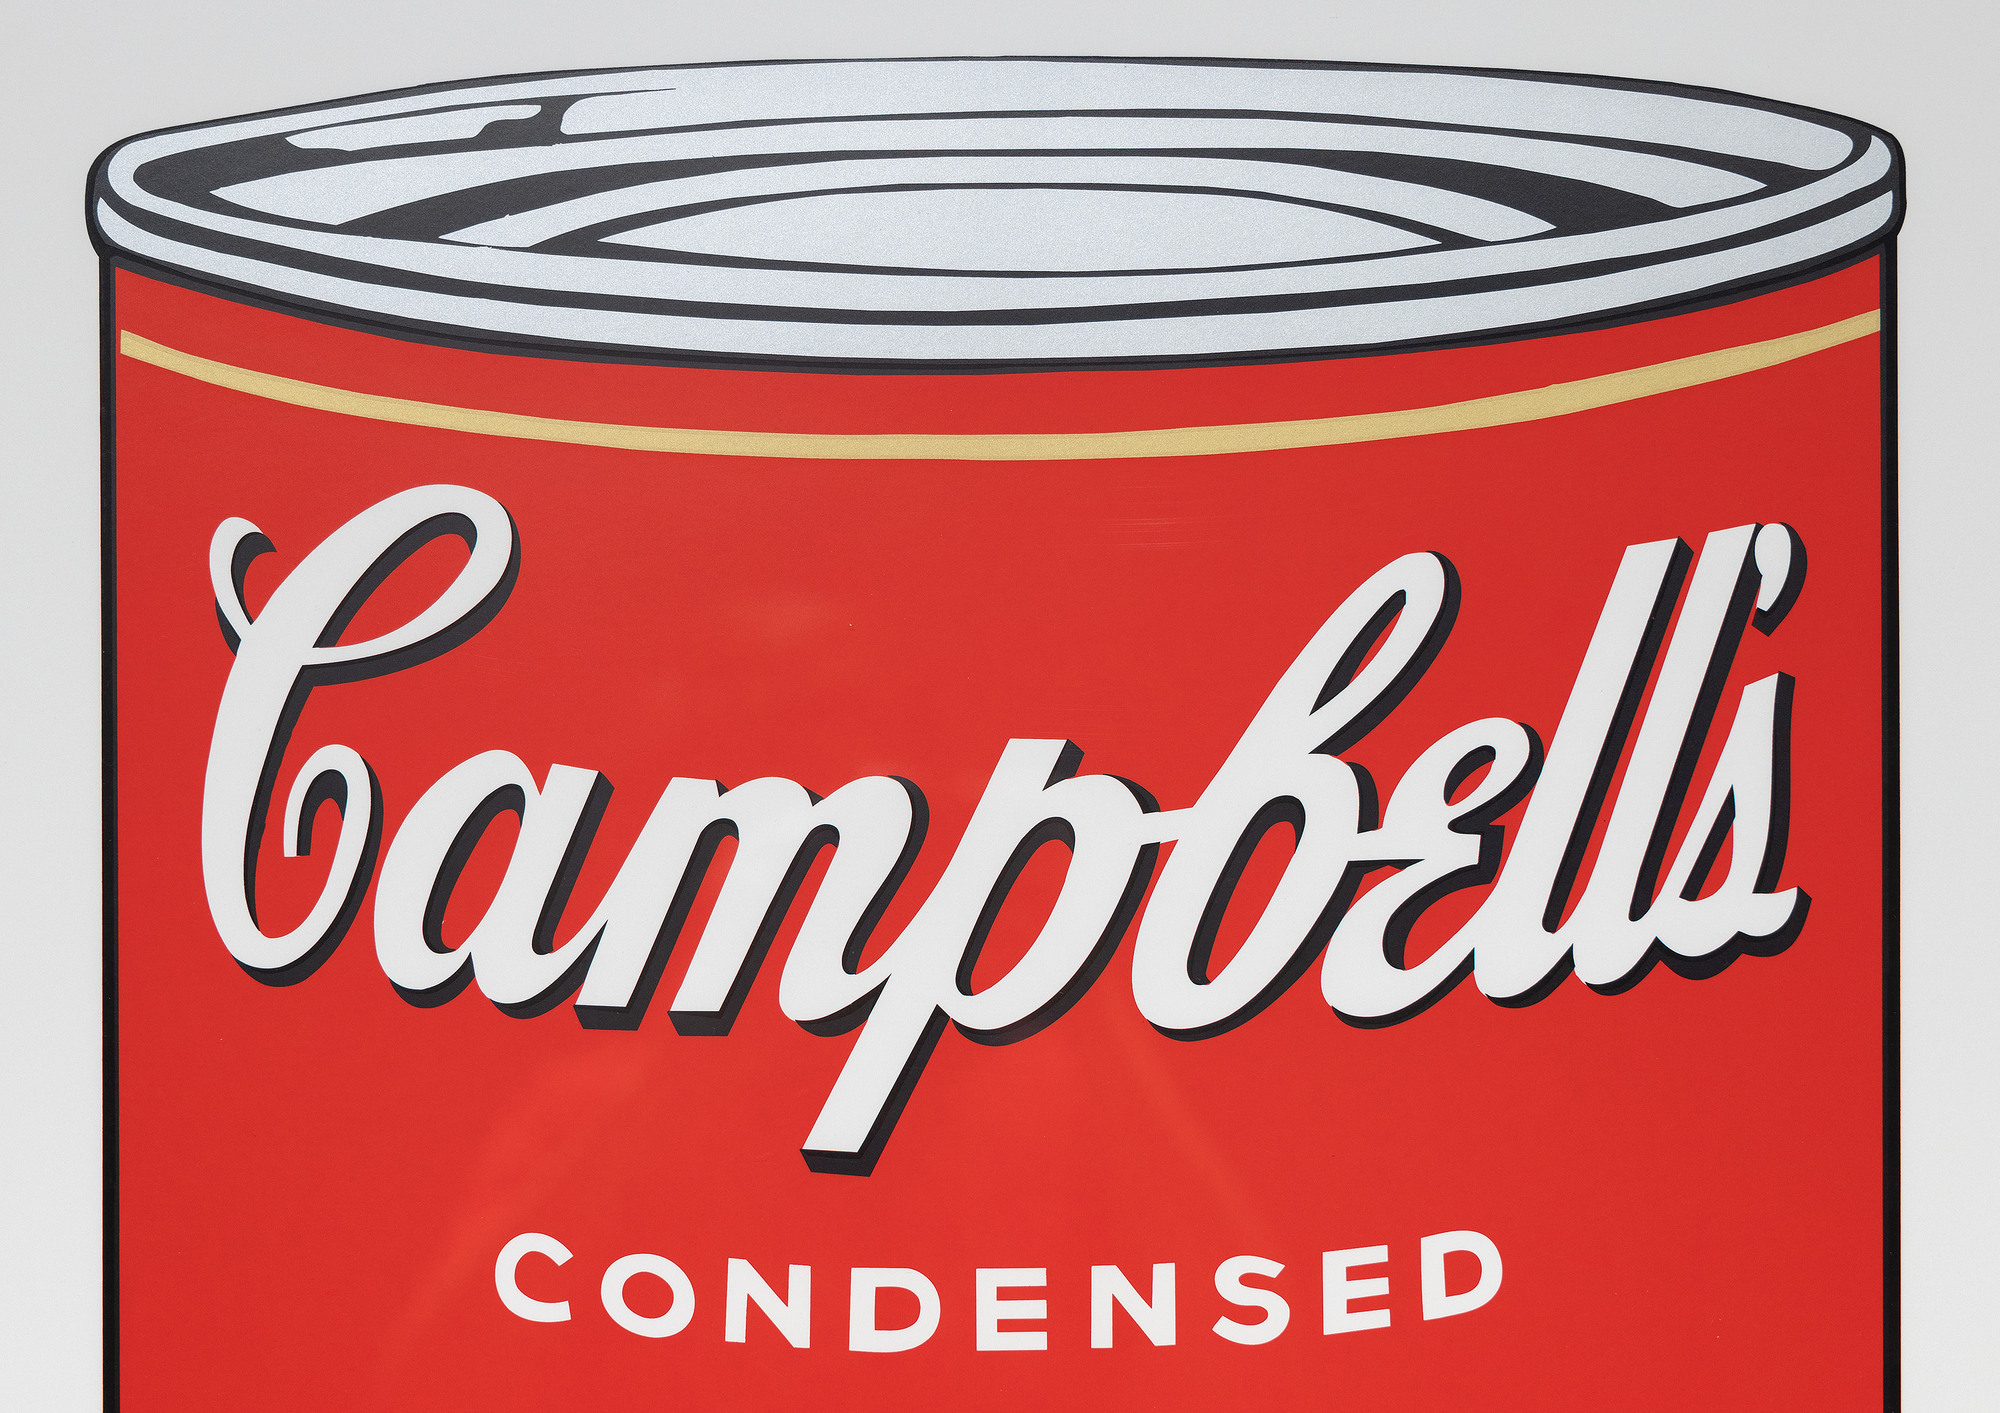 La serie de latas de sopa Campbell de Andy Warhol marca un momento crucial en su carrera y en el movimiento del arte pop. La serie, compuesta por 32 lienzos, cada uno con un sabor diferente, revolucionó el mundo del arte al elevar los bienes de consumo cotidianos y mundanos a la categoría de arte elevado. La serigrafía Pepper Pot, de 1968, emplea su característico estilo de colores vivos y planos e imágenes repetidas, característico de la producción en masa y la cultura de consumo. La serigrafía, una técnica comercial, concuerda con el interés de Warhol por desdibujar los límites entre el arte elevado y el arte comercial, desafiando los valores y percepciones artísticos.